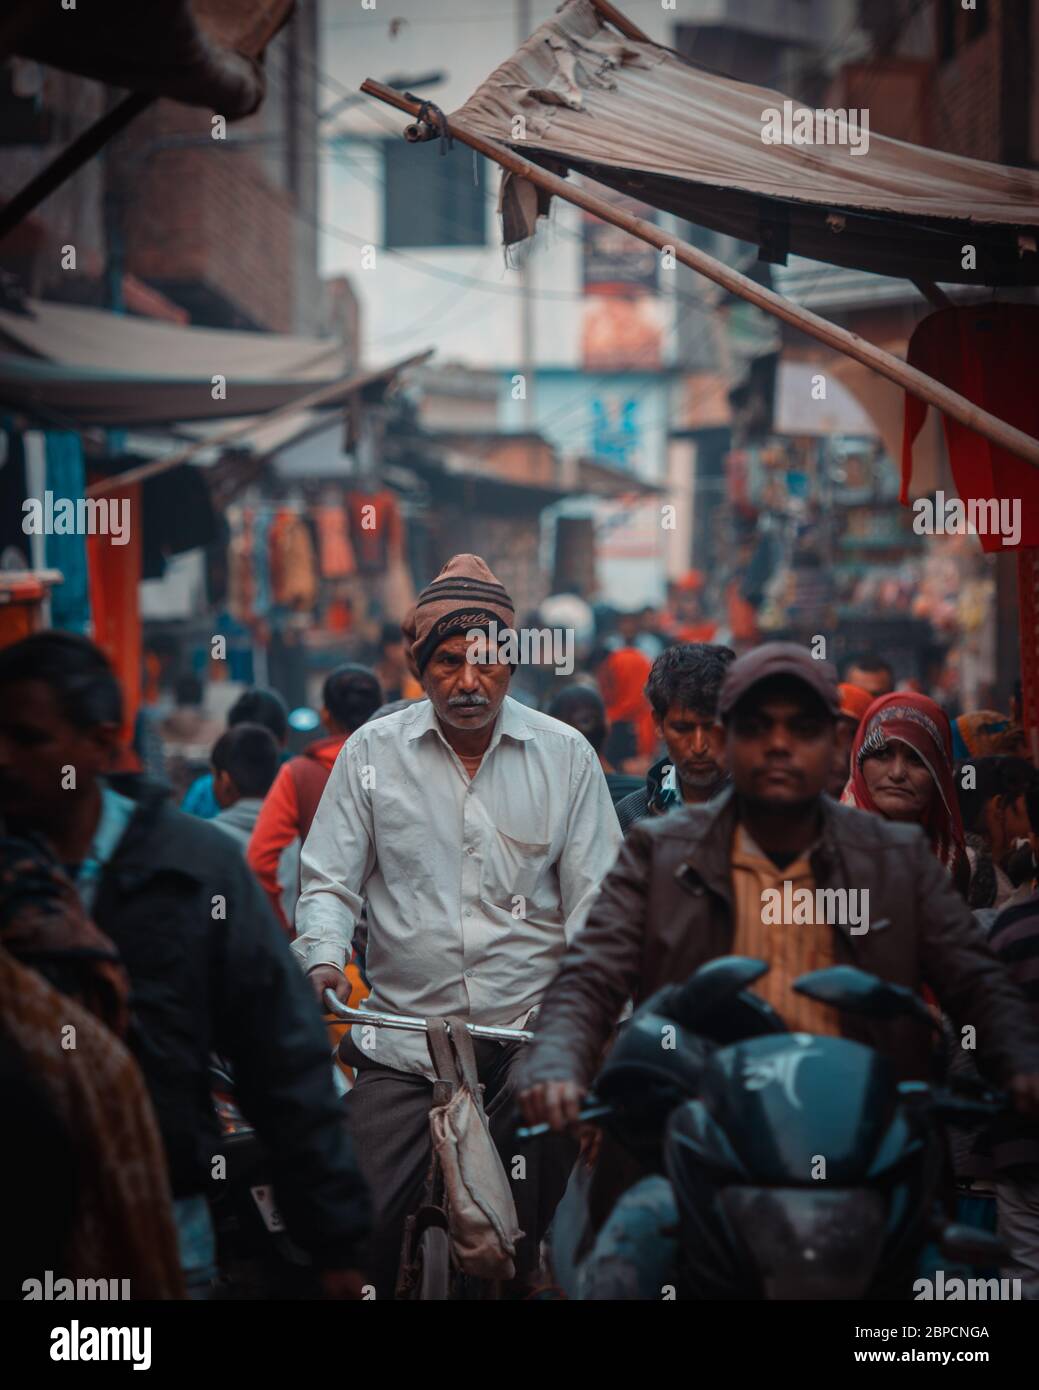 Persone al mercato di strada ad Agra, India. Agra è una delle città più popolose dell'Uttar Pradesh. Foto Stock